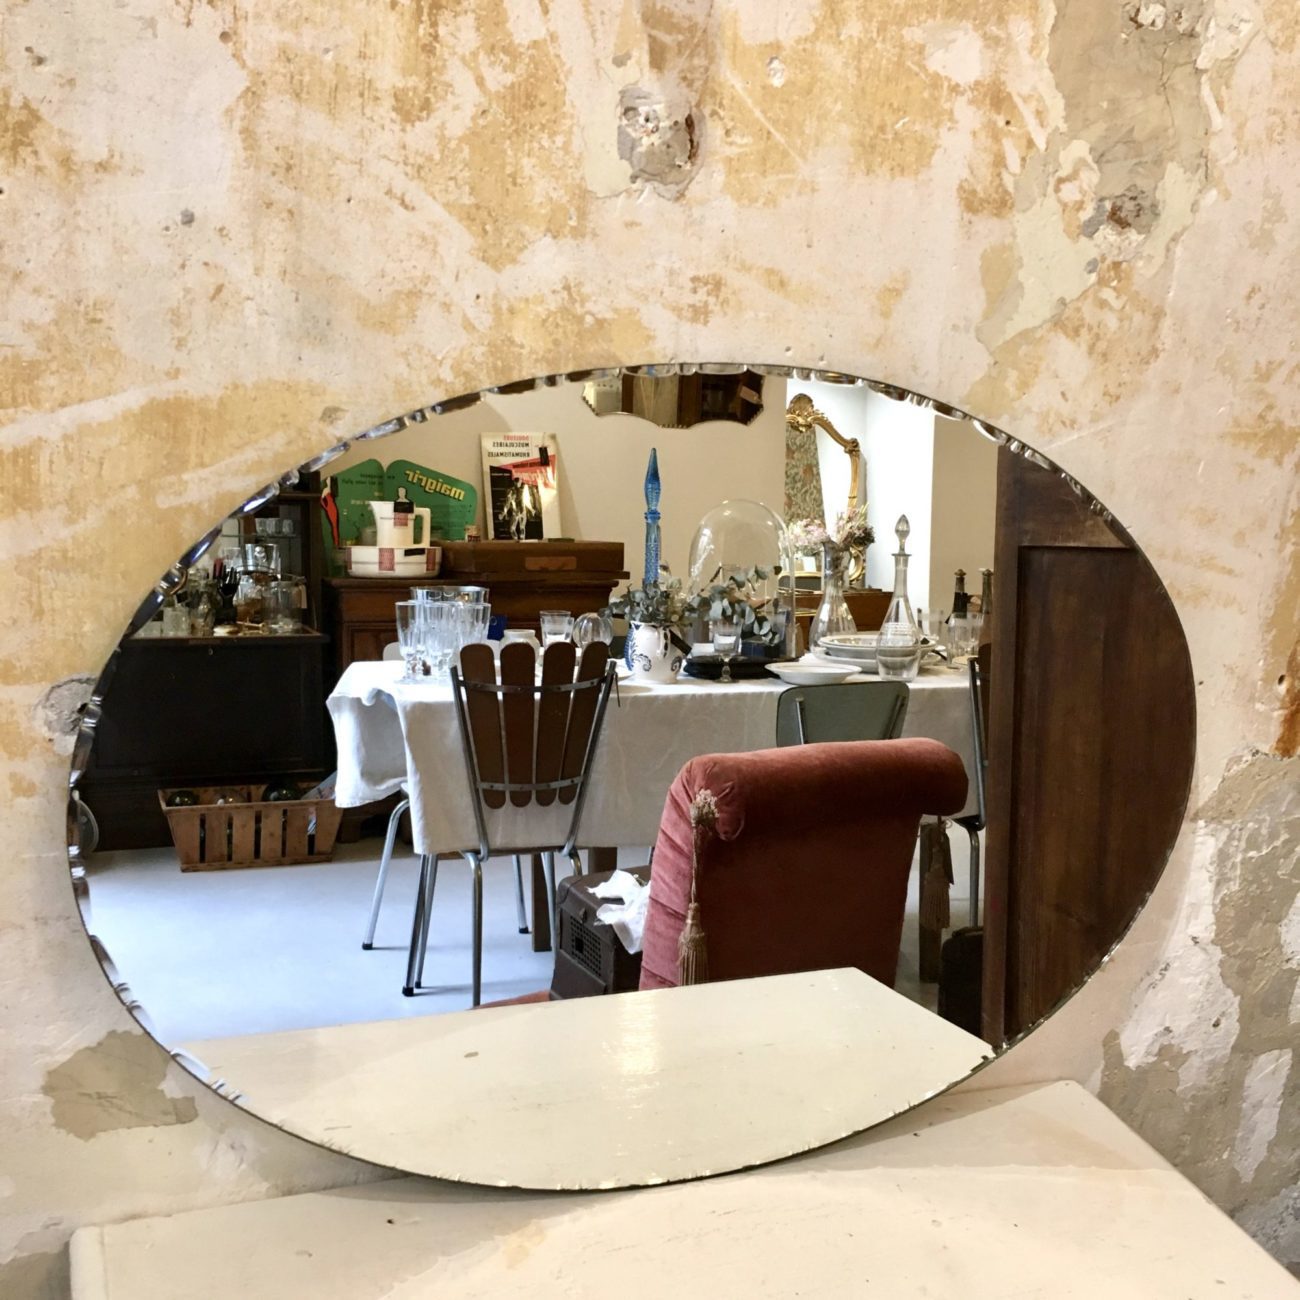 Miroir ancien oval biseauté